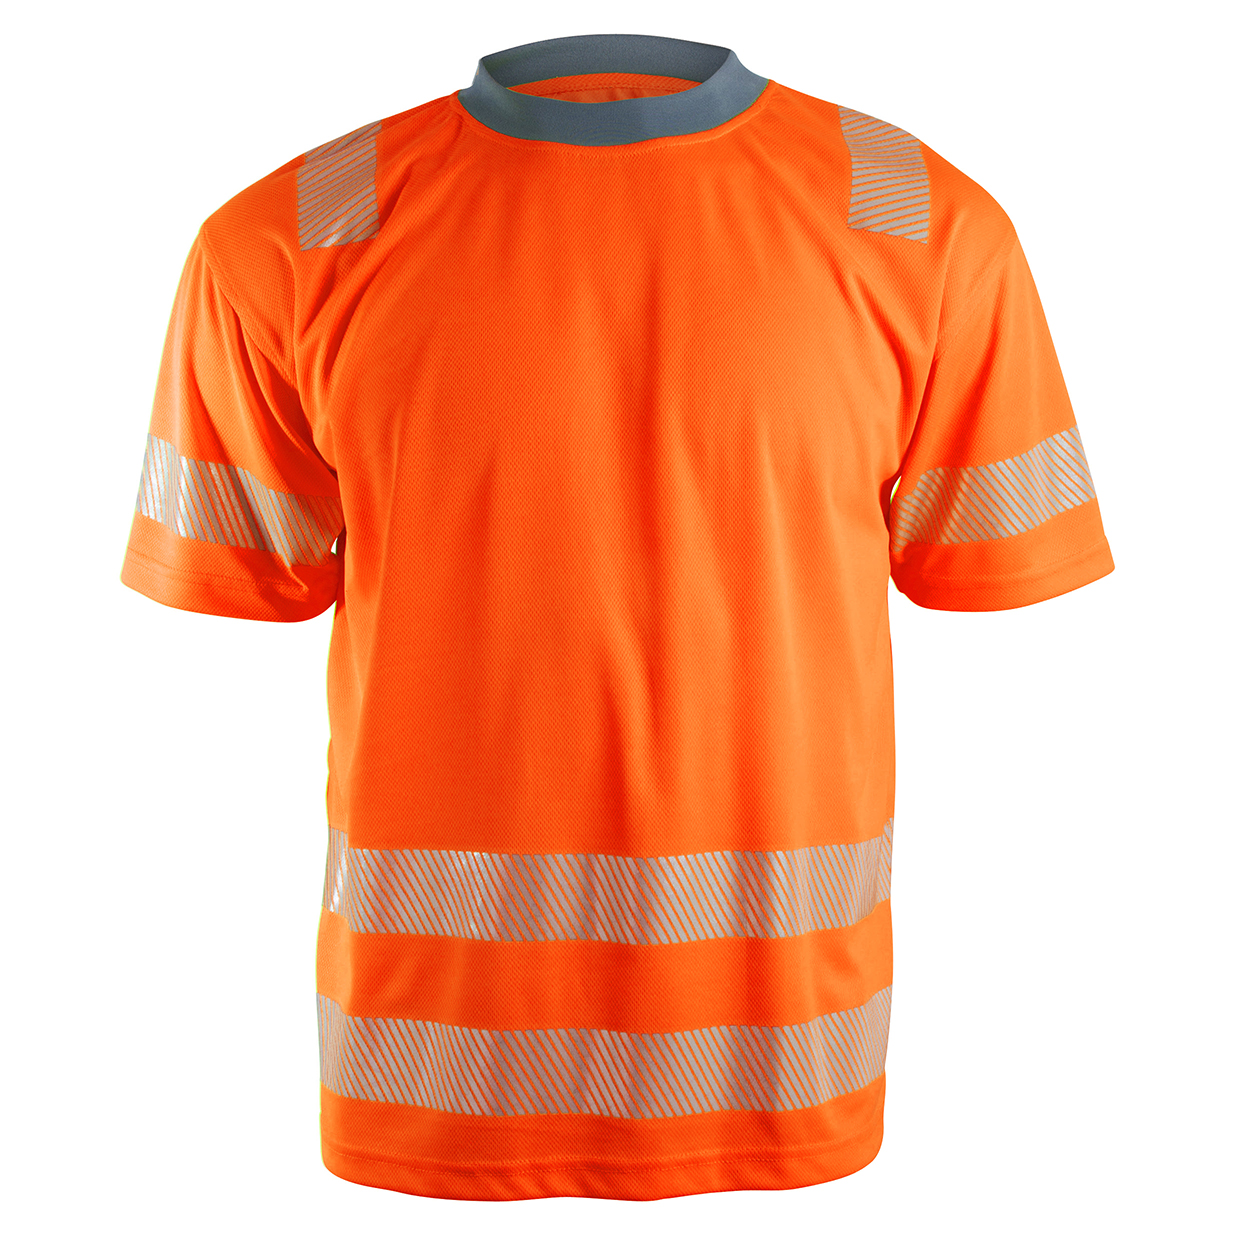 Sundsvall Unisex T-shirt med reflekser, orange